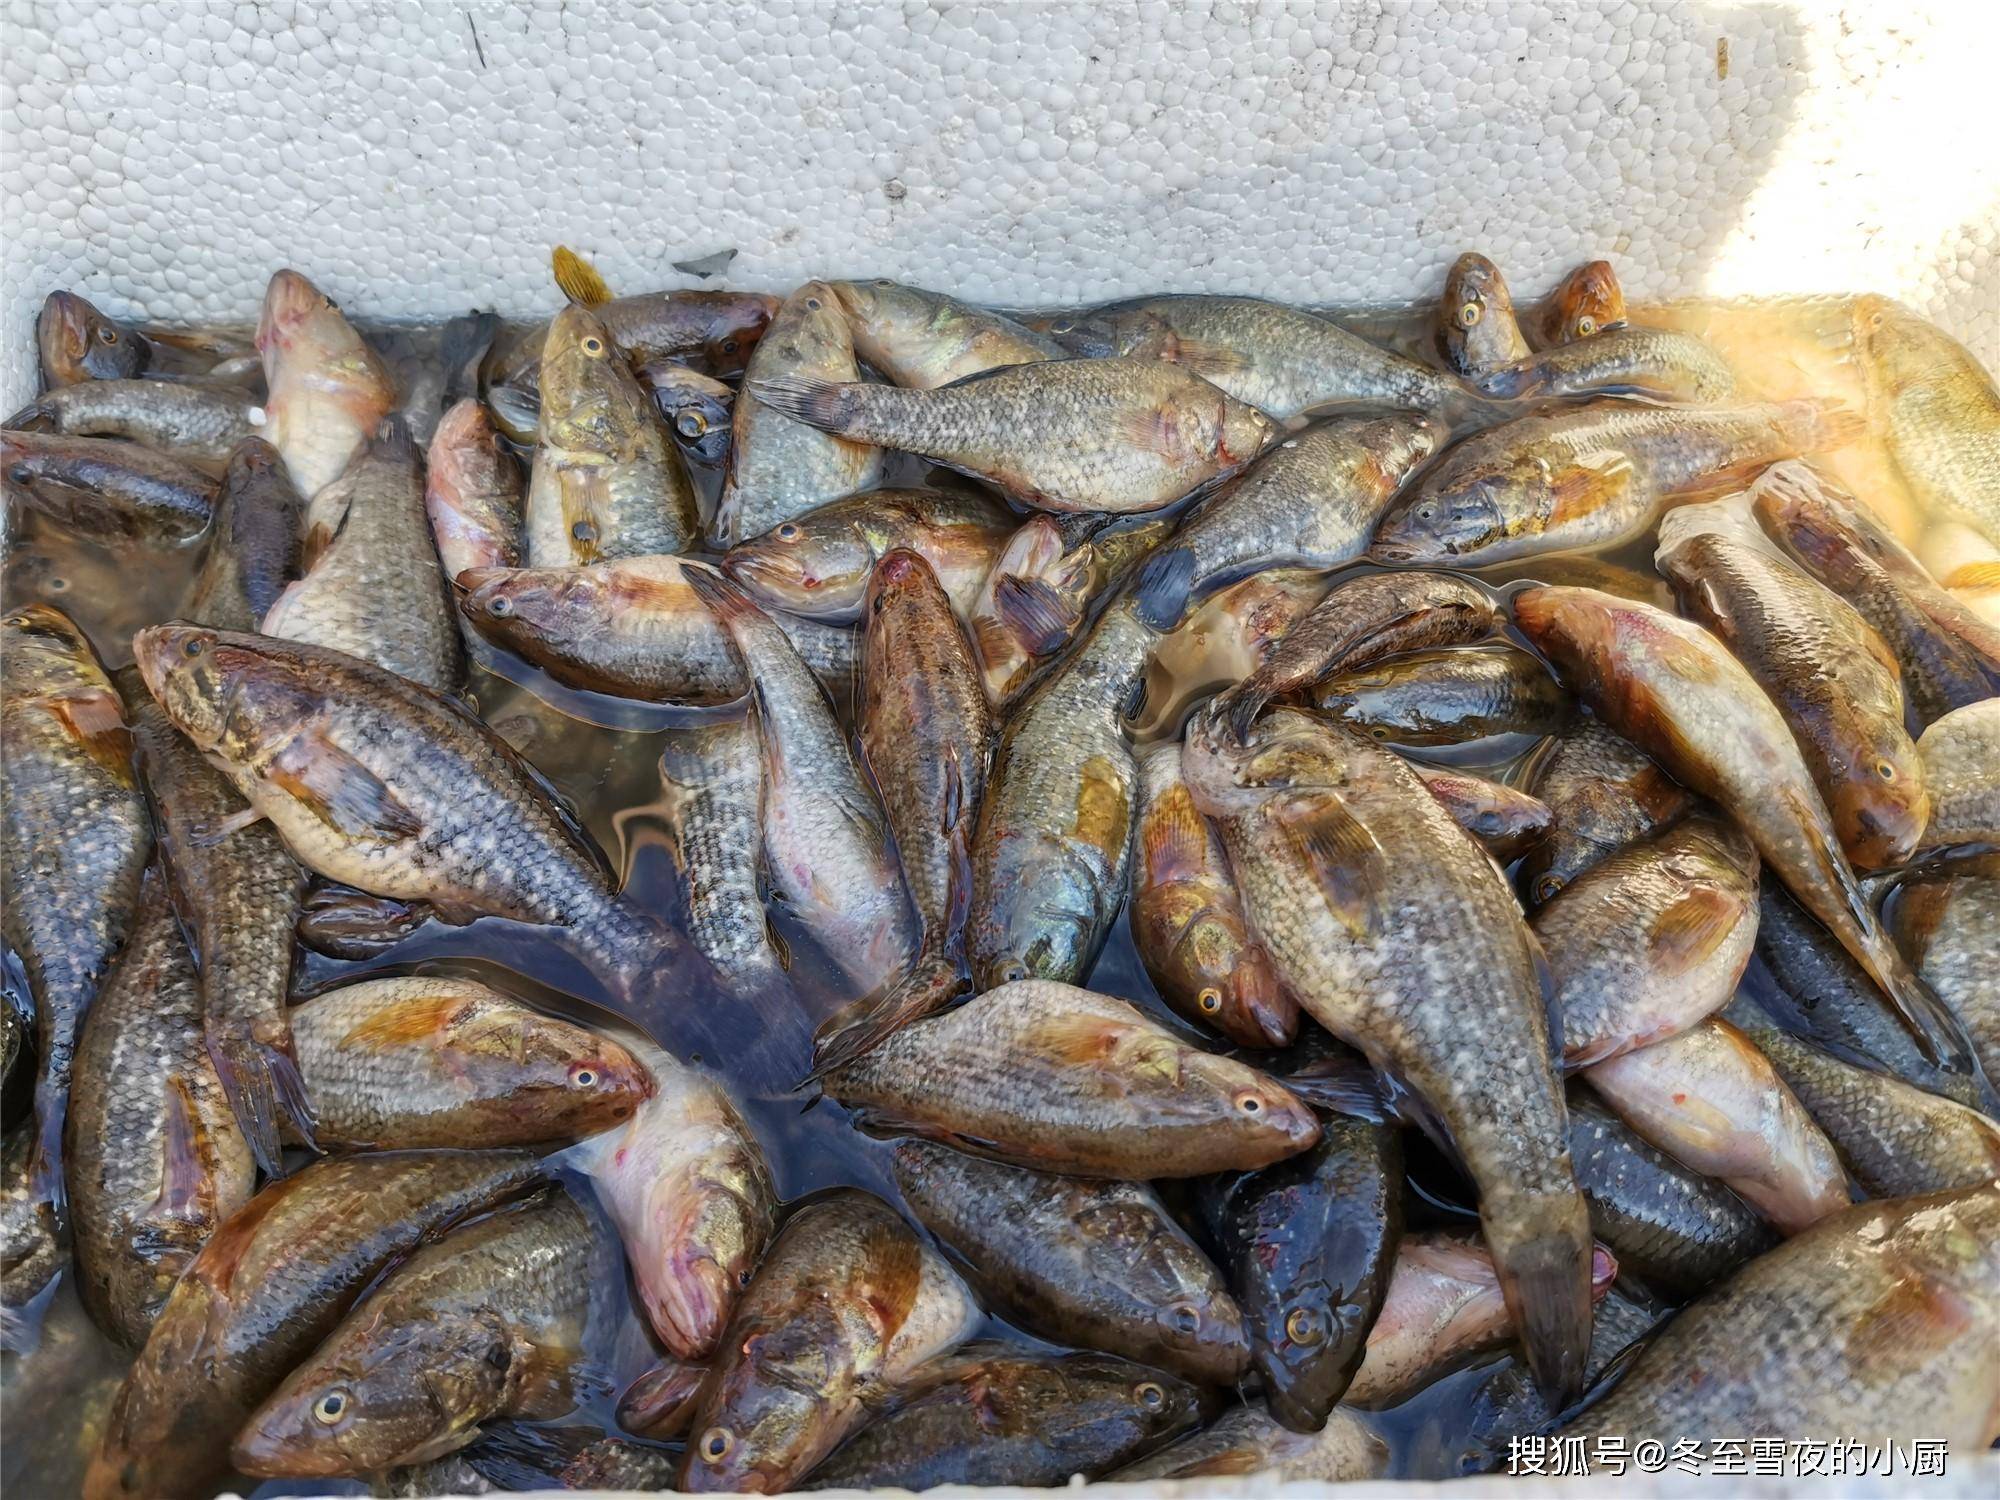 红水河的野生鱼类越来越多，你认得出这些野生鱼吗？